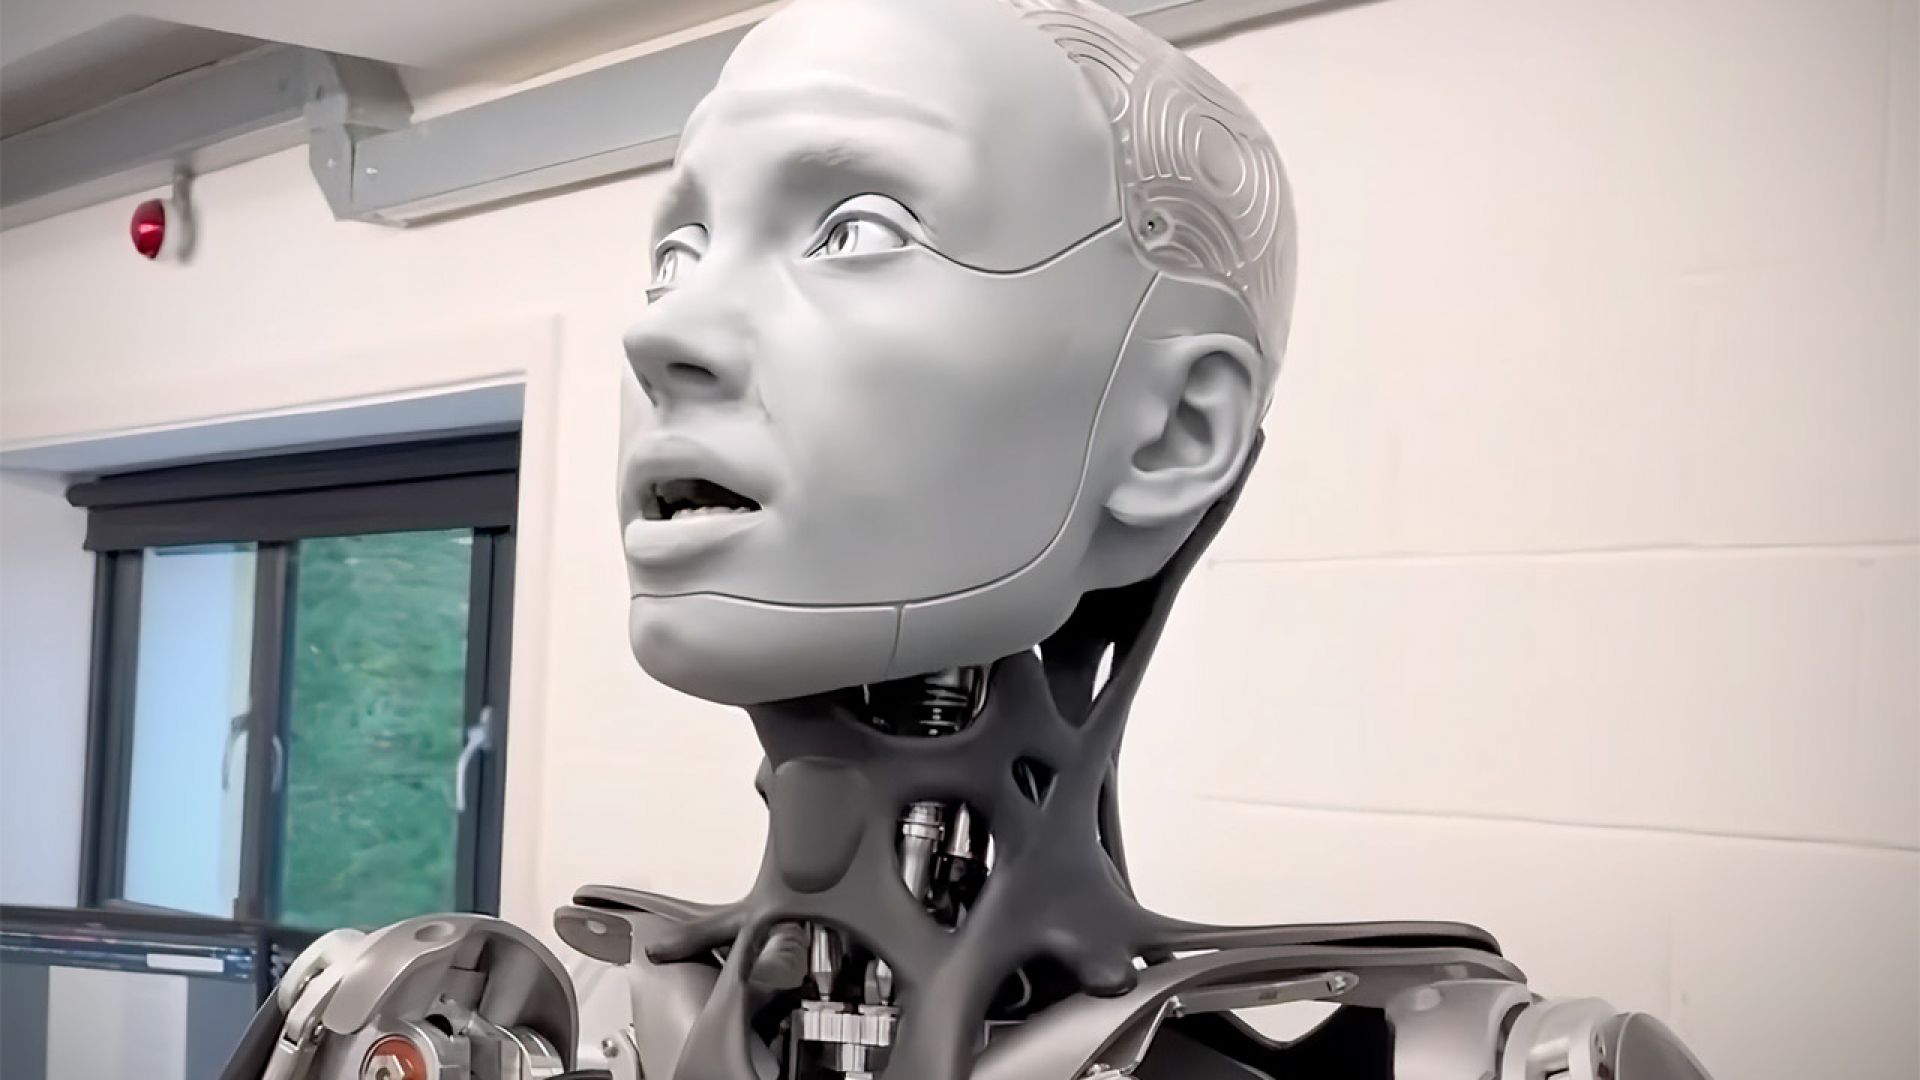 Представиха робота с най-човешко изражение (видео)